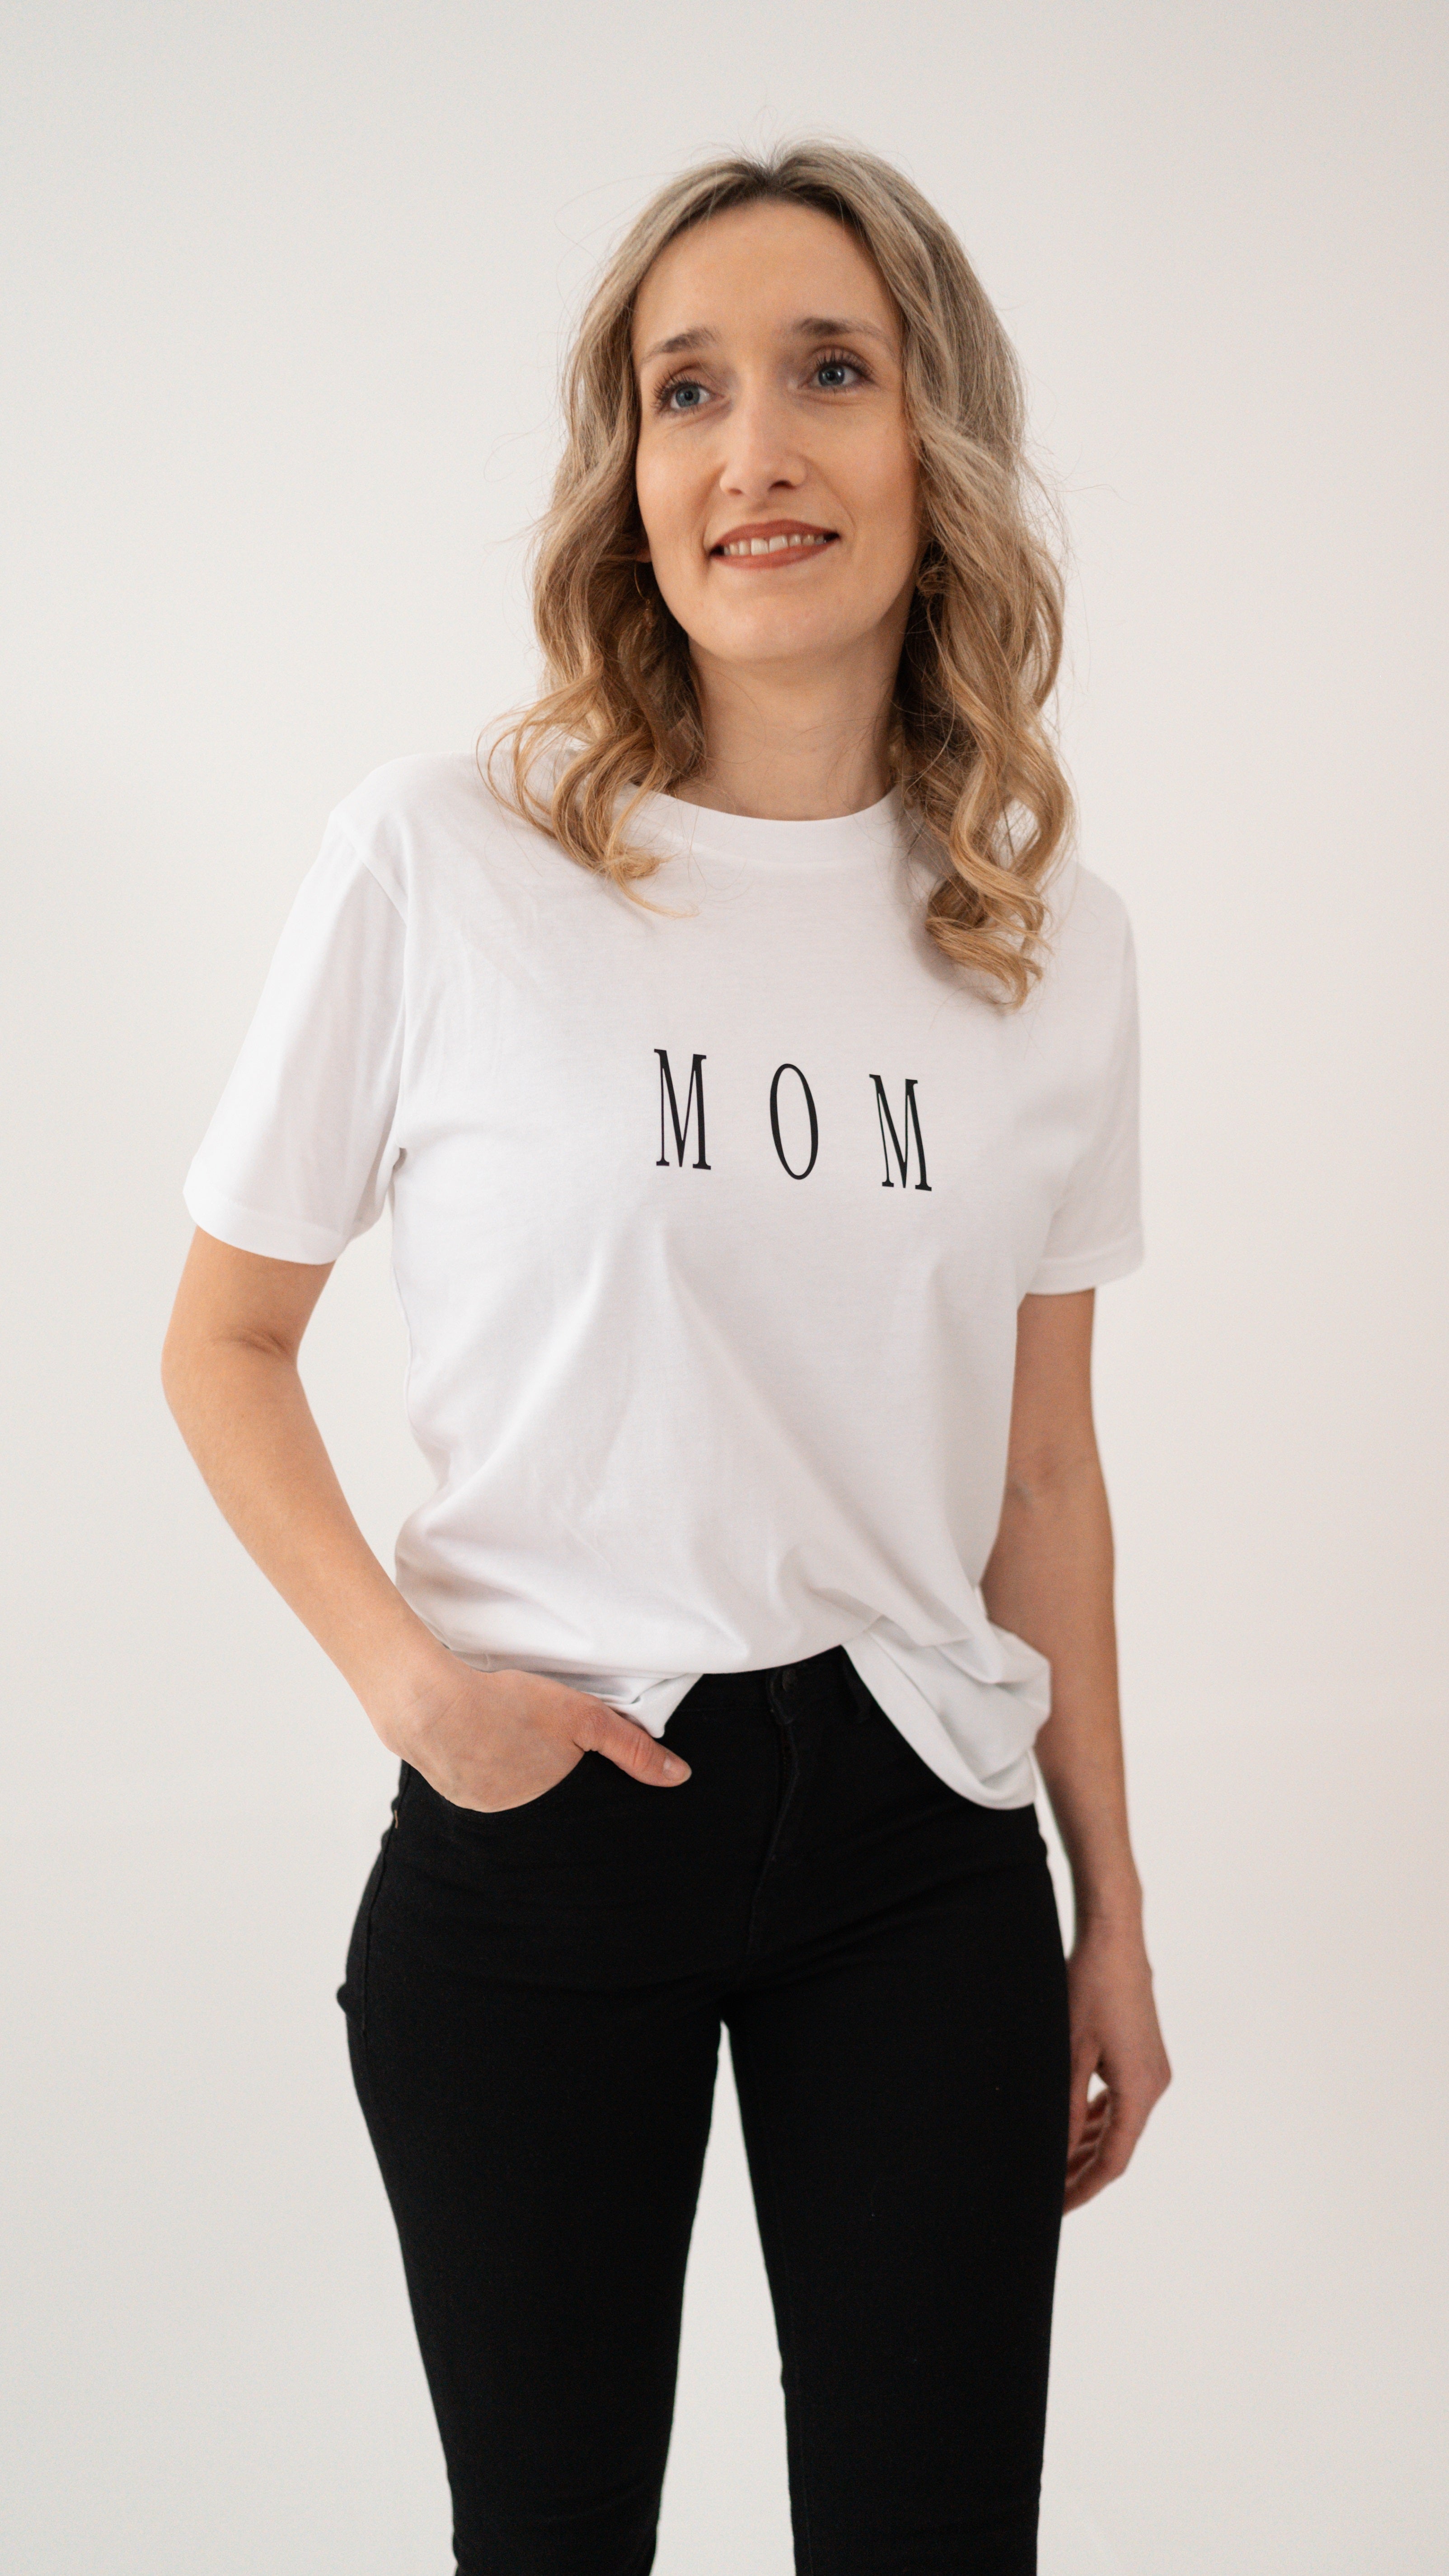 MOM Shirt, T-Shirt